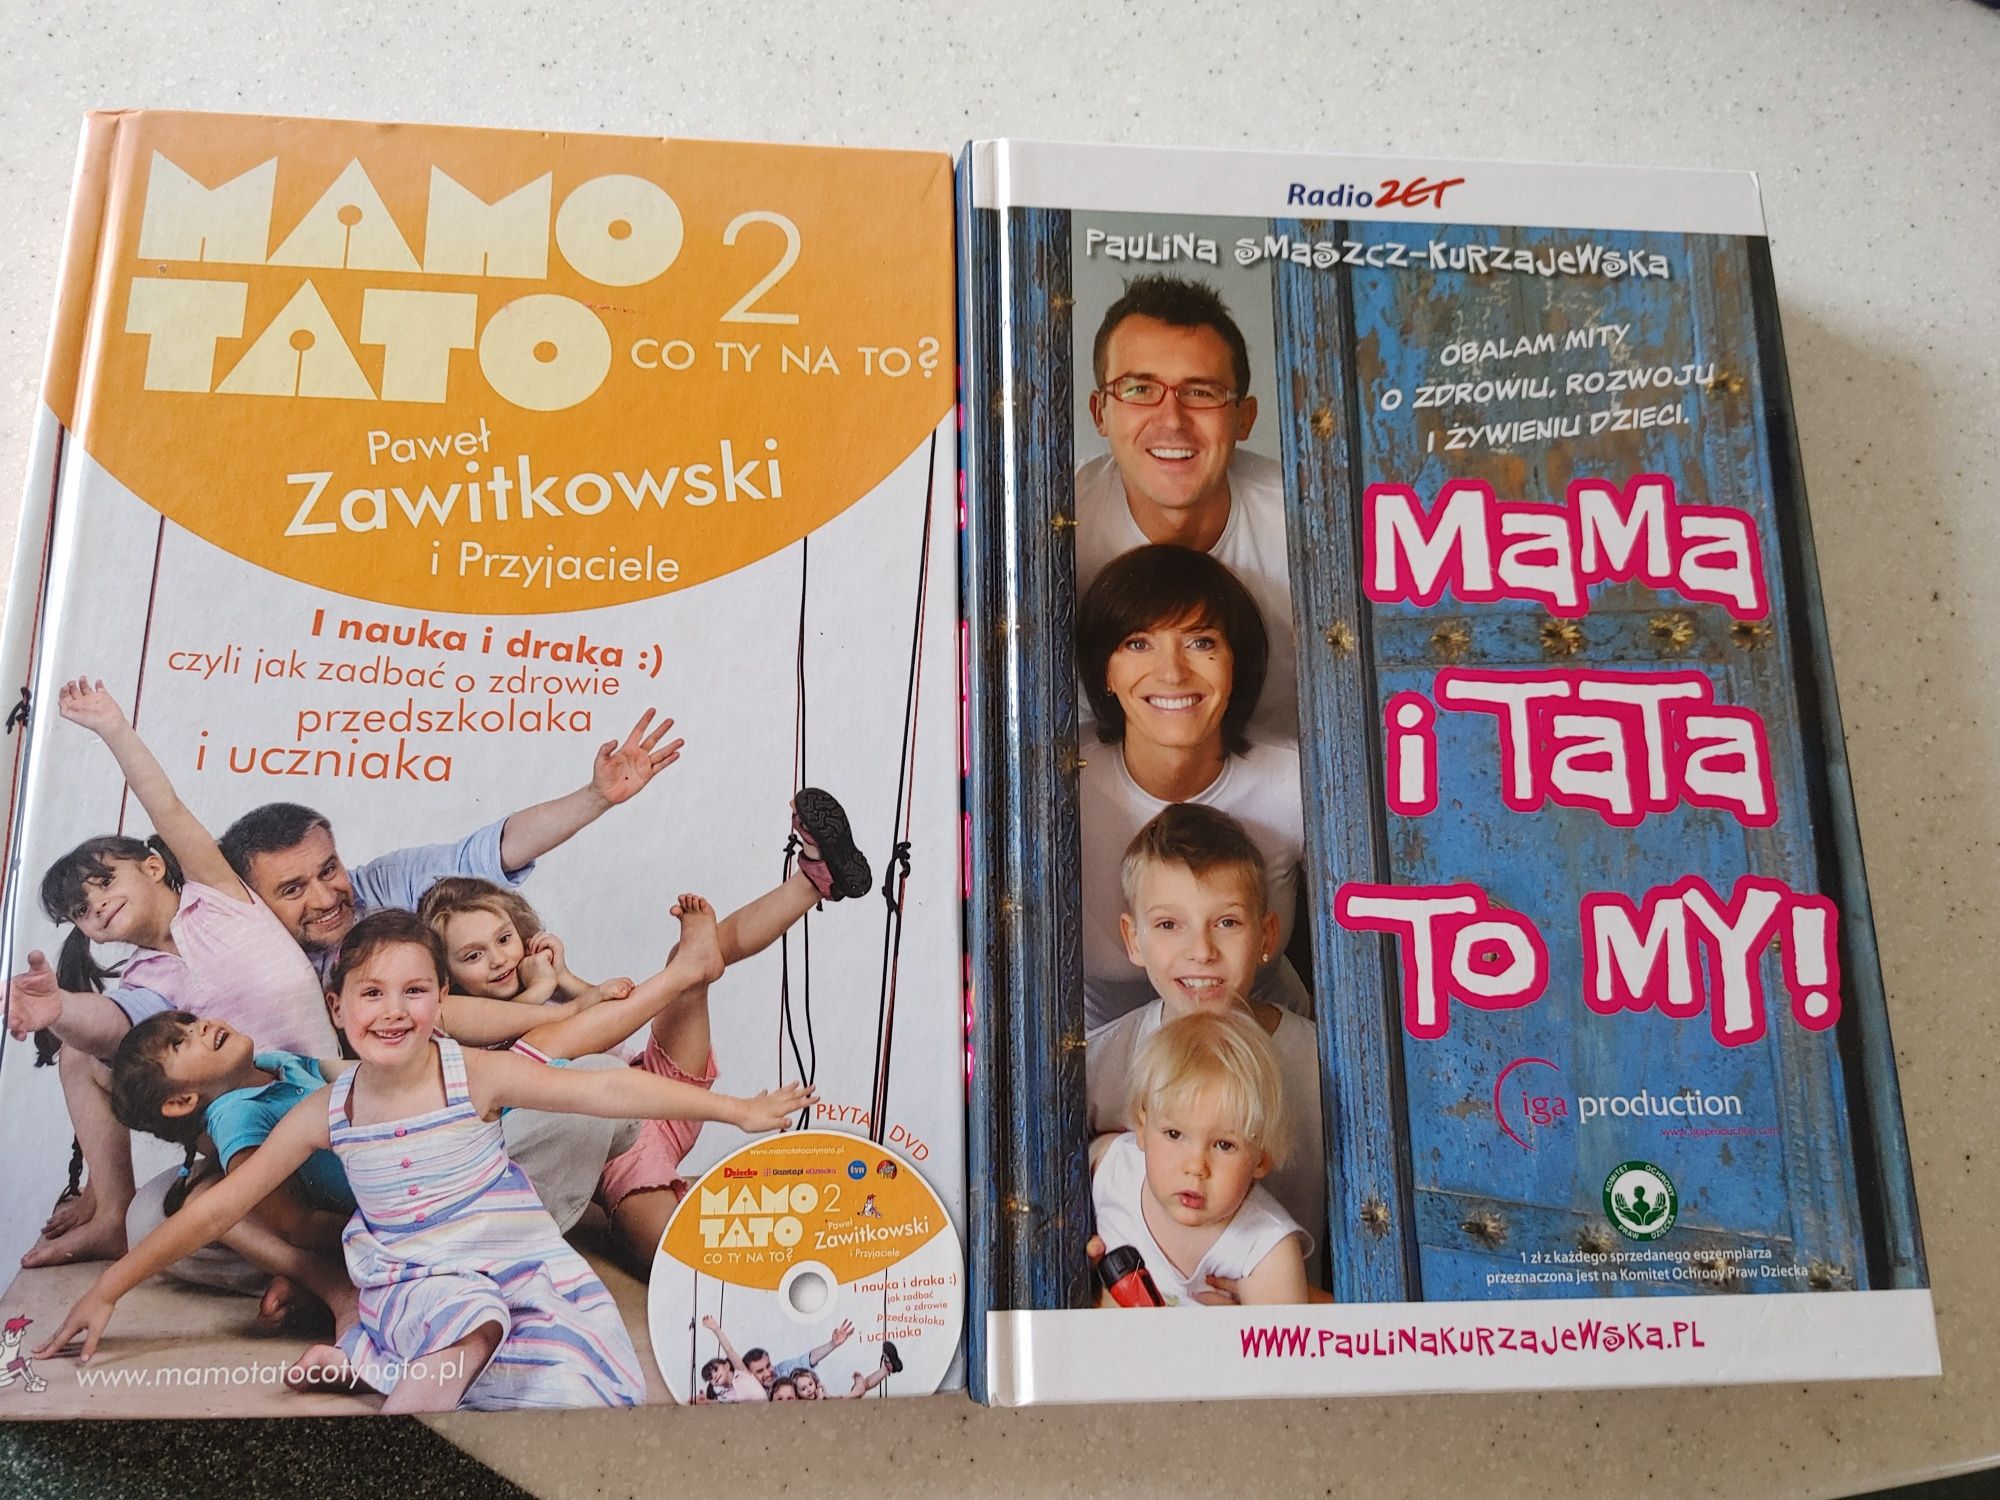 Zestaw nowych ksiazek Zawitkowski Smaszcz Kurzajewska Mamo Tato